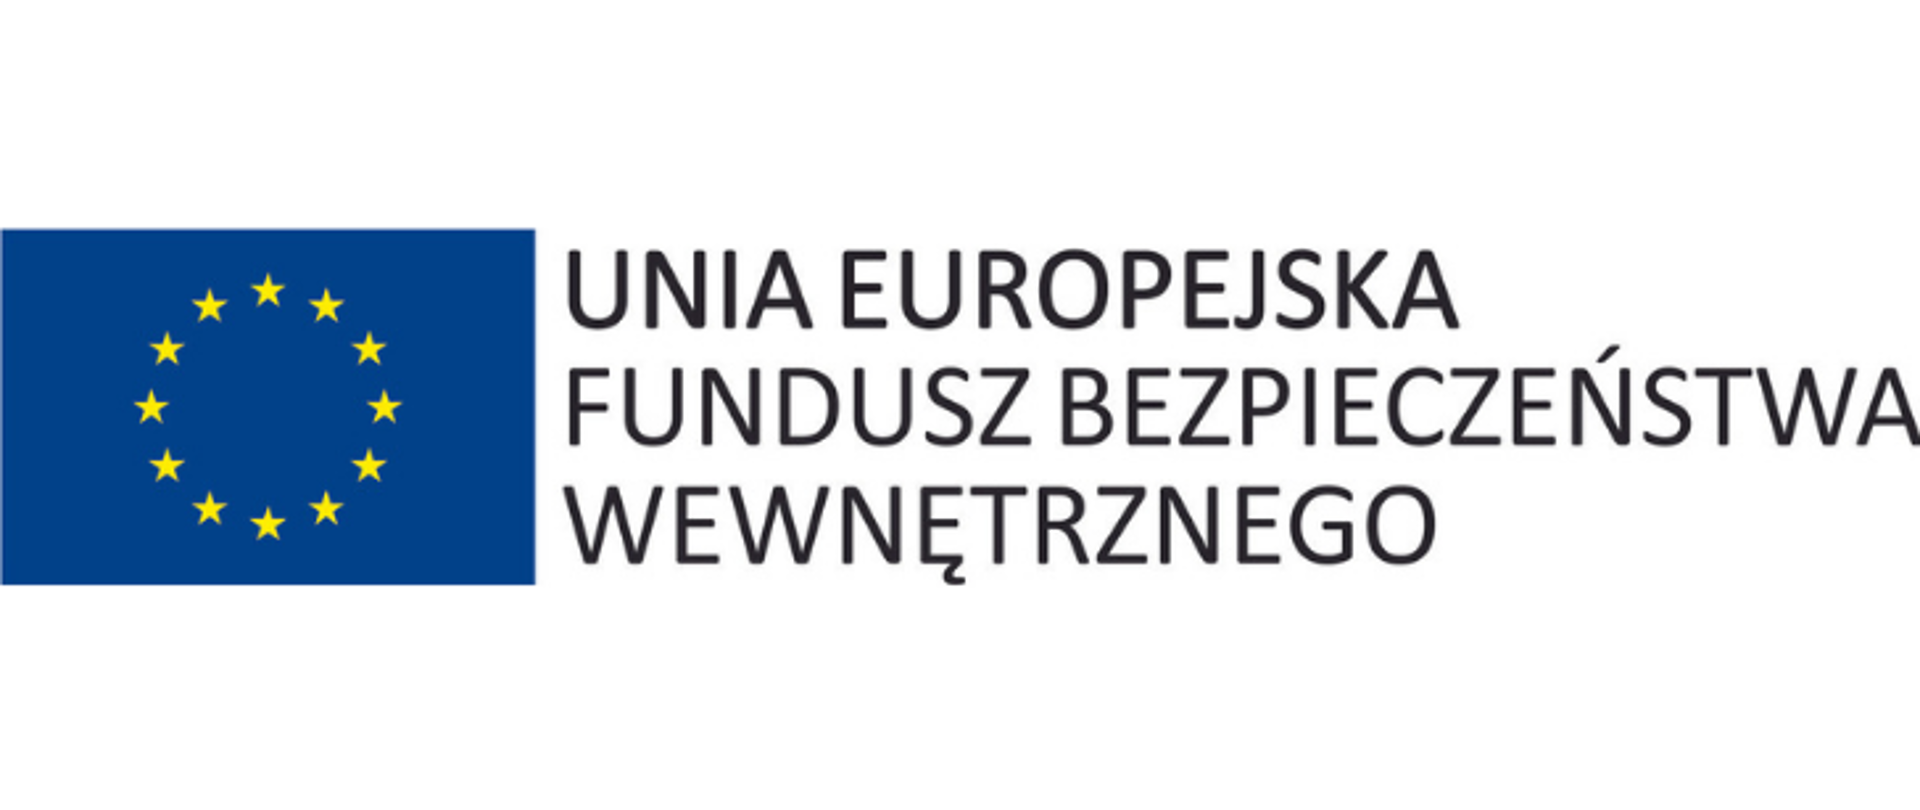 Fundusz Bezpieczeństwa Wewnętrznego Unii Europejskiej